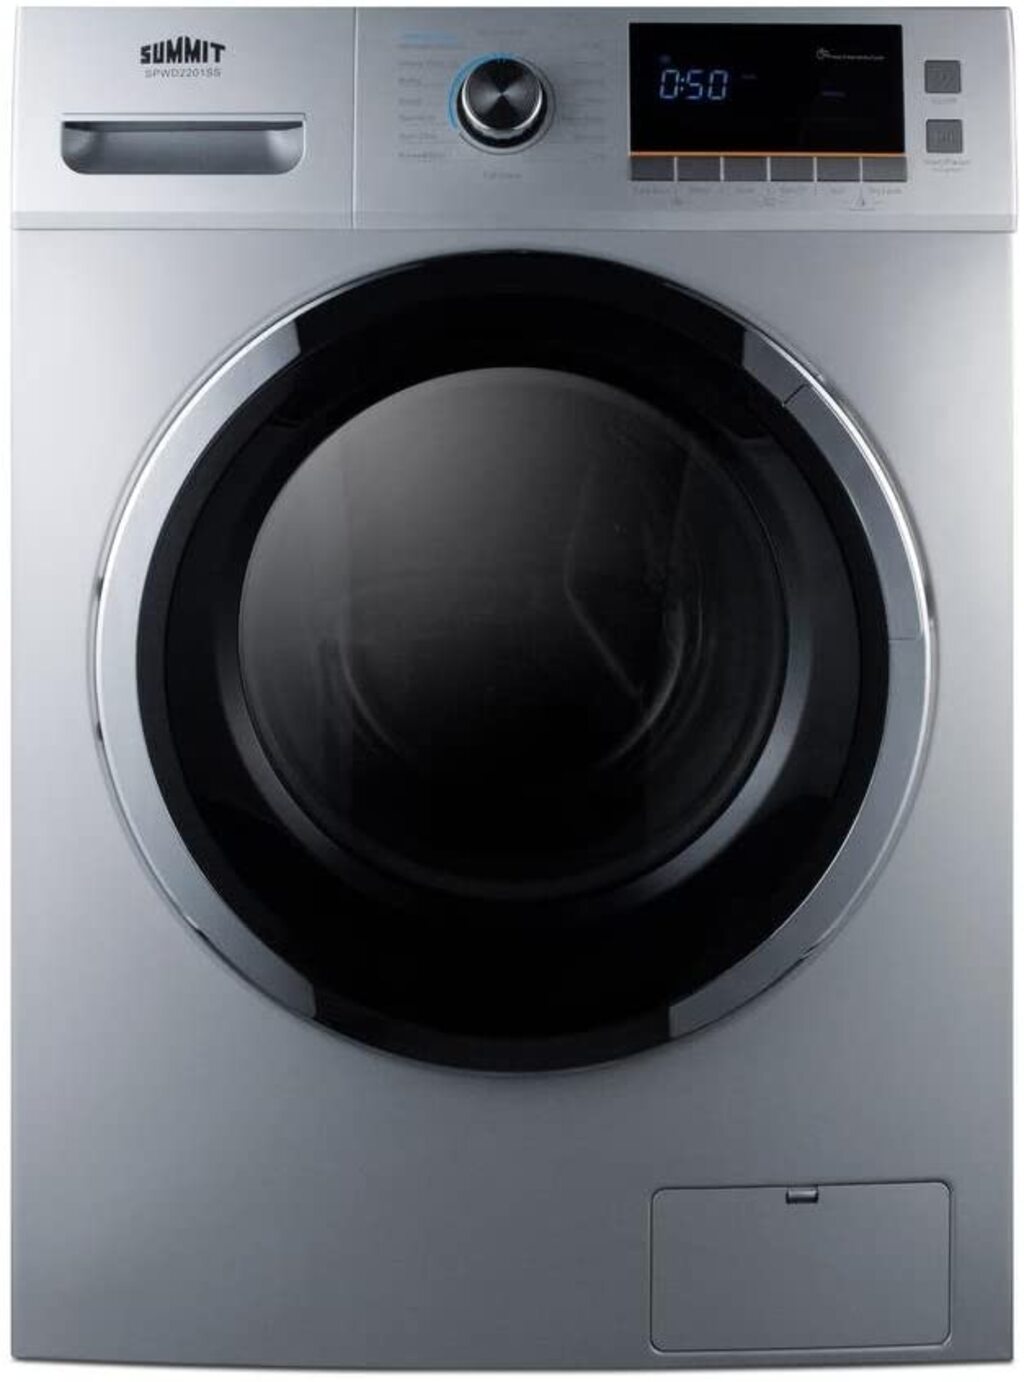 washing machine brands to avoid